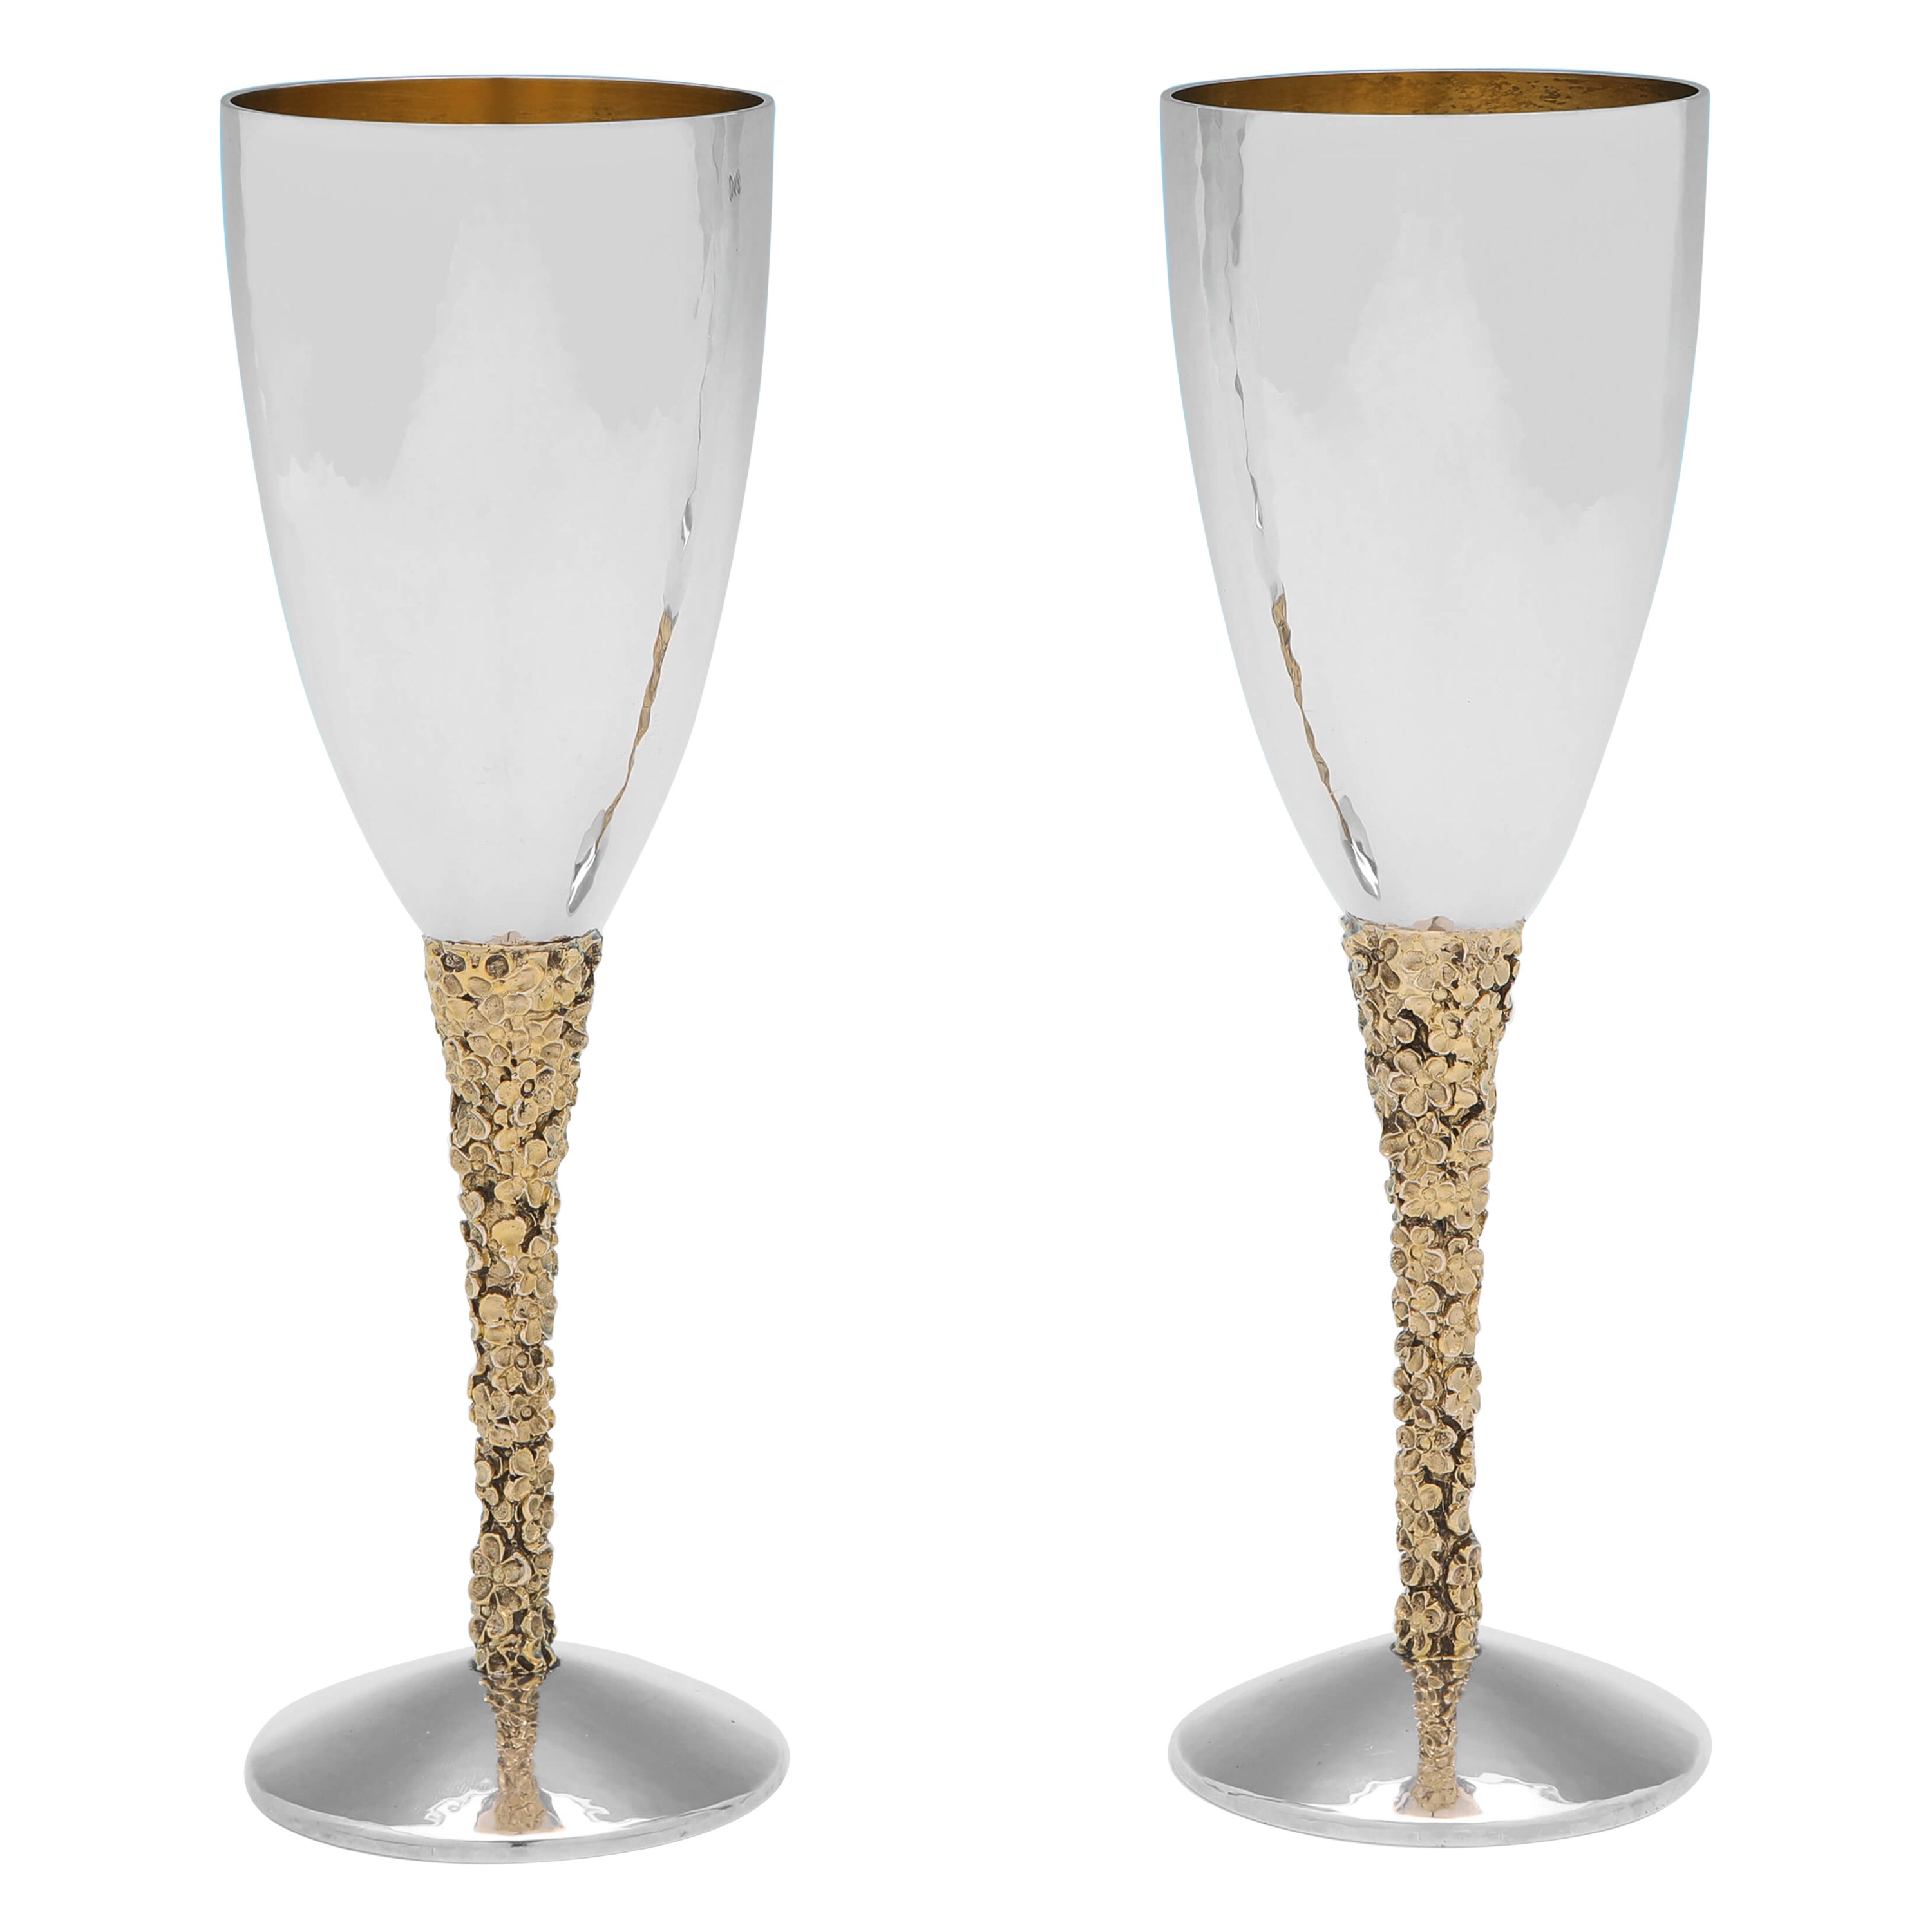 Stuart Devlin - Modernist Design Sterling Silver & Gilt Champagne Flutes - 1977 For Sale